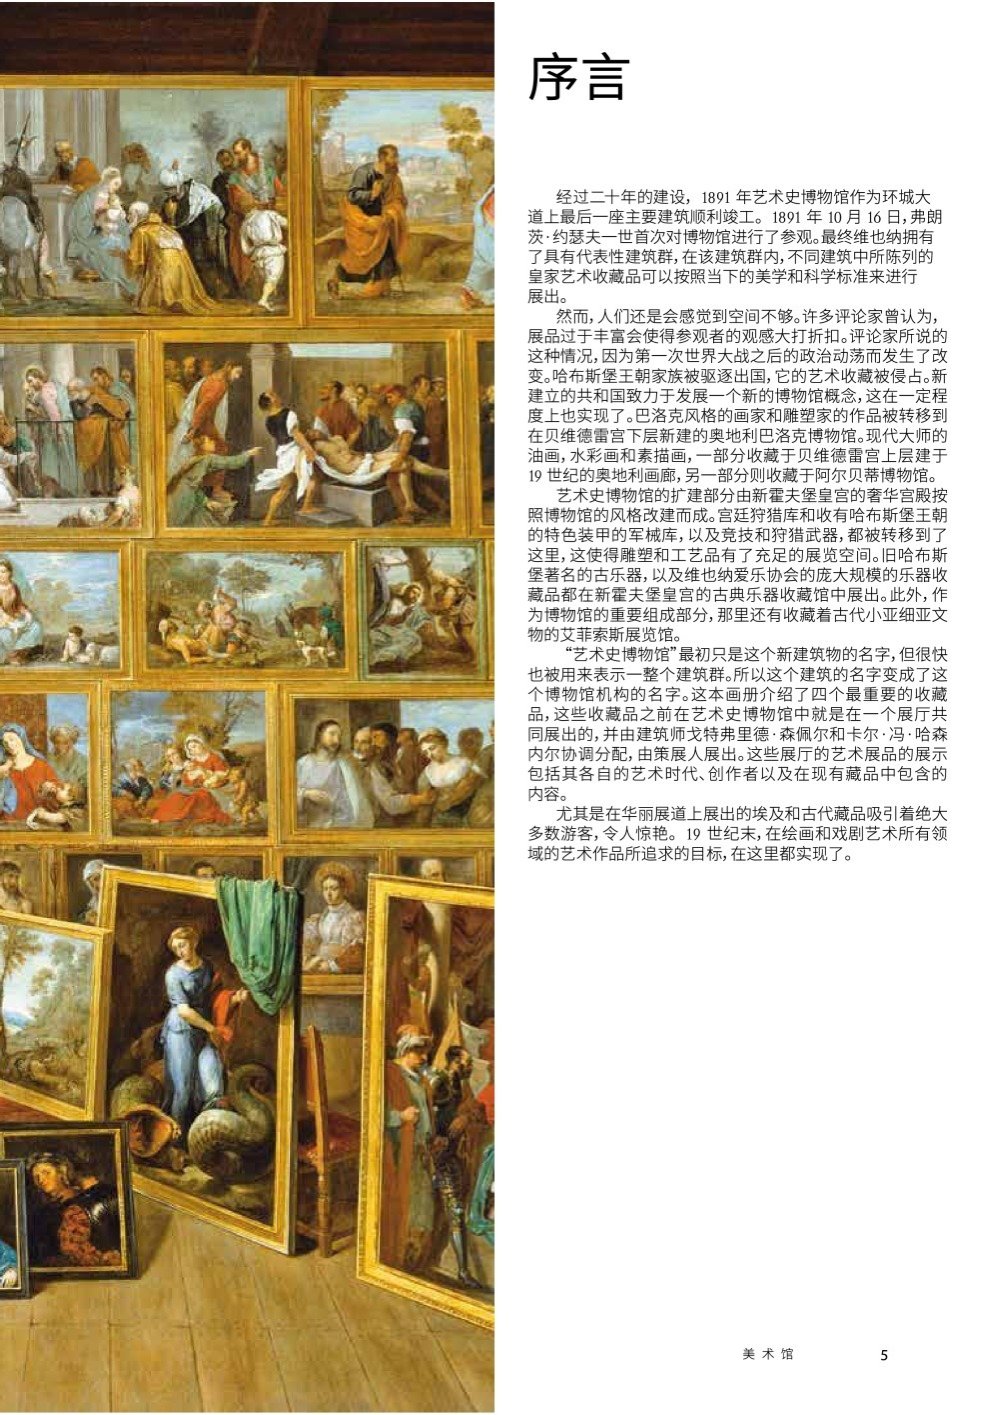 9783854314233 - Kunsthistorisches Museum Vienna - French Edition